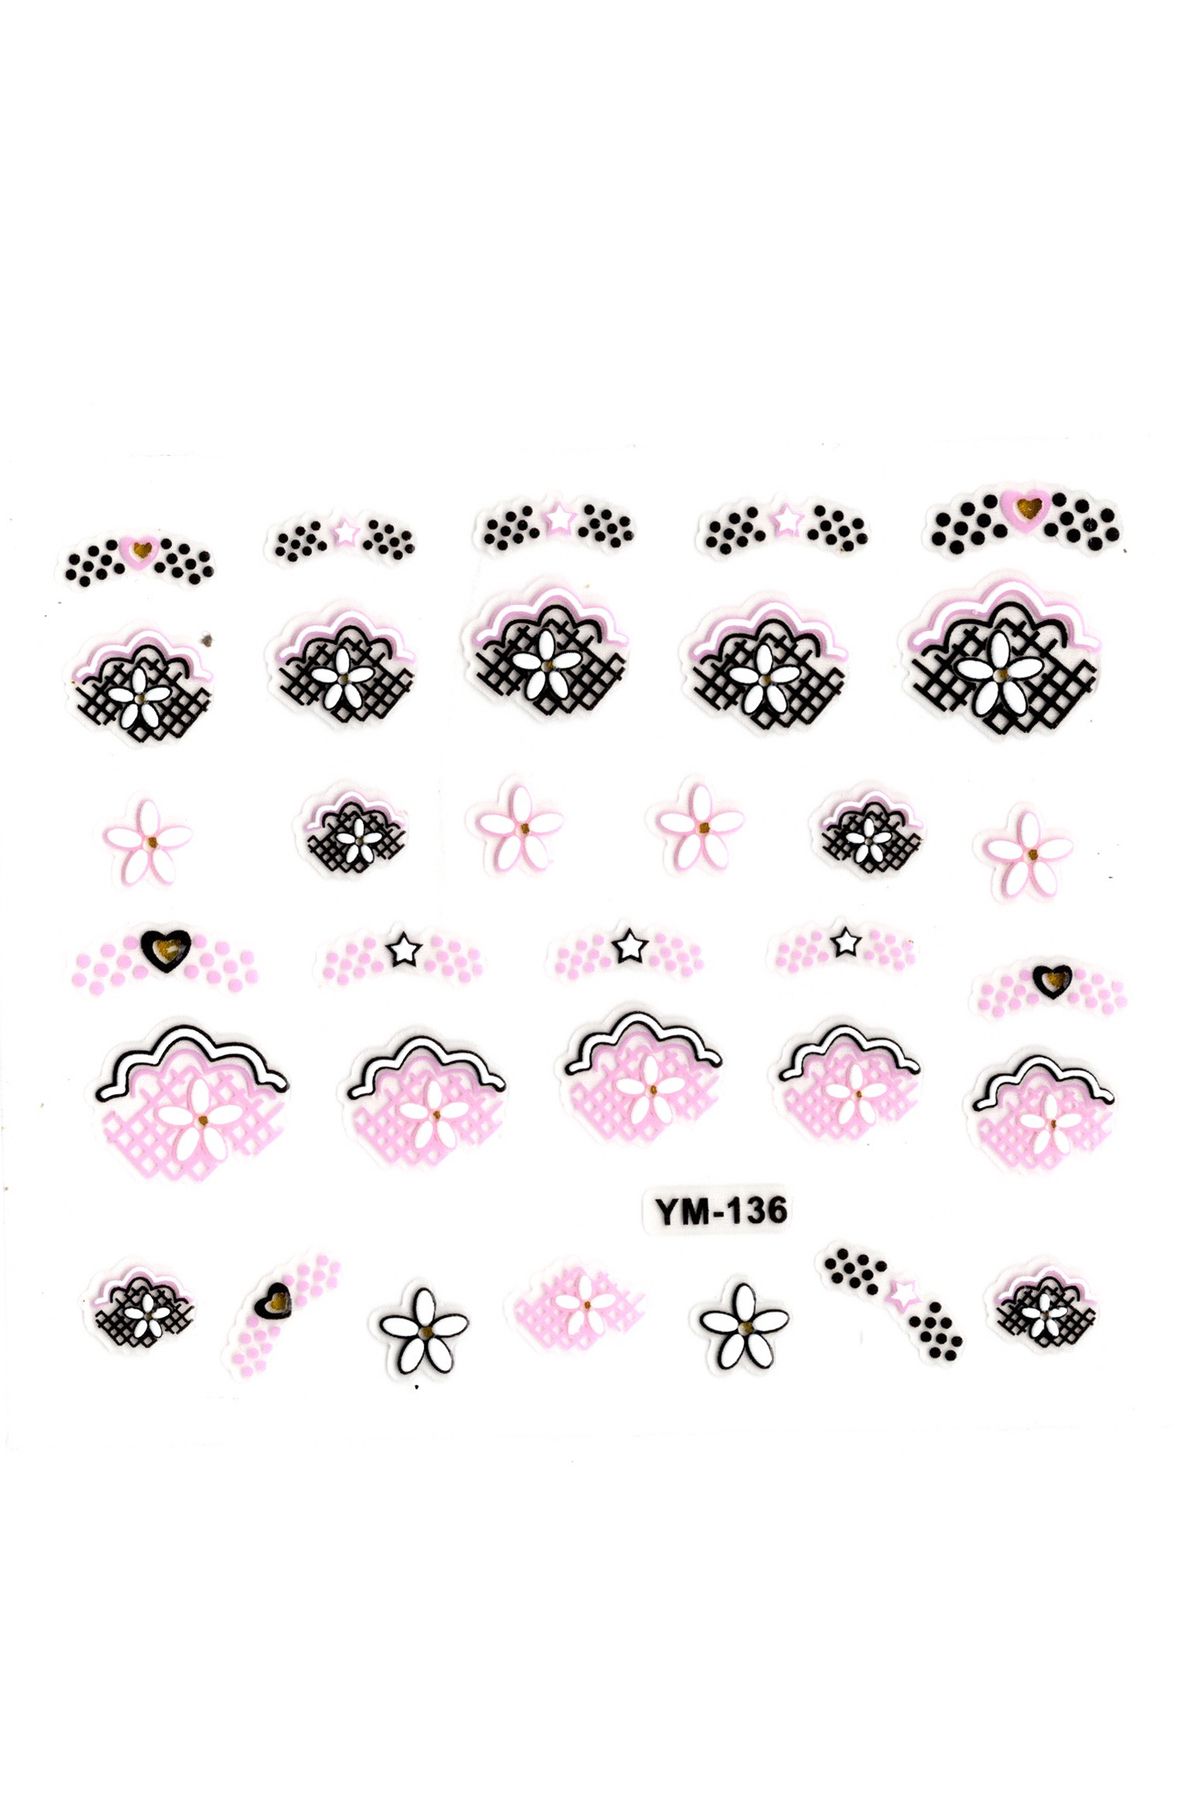 Limmy Tırnak Sticker, Tırnak Süsleme, Nail Art (ym-136) - 6X5 cm - Yıldız Kalp Çiçek